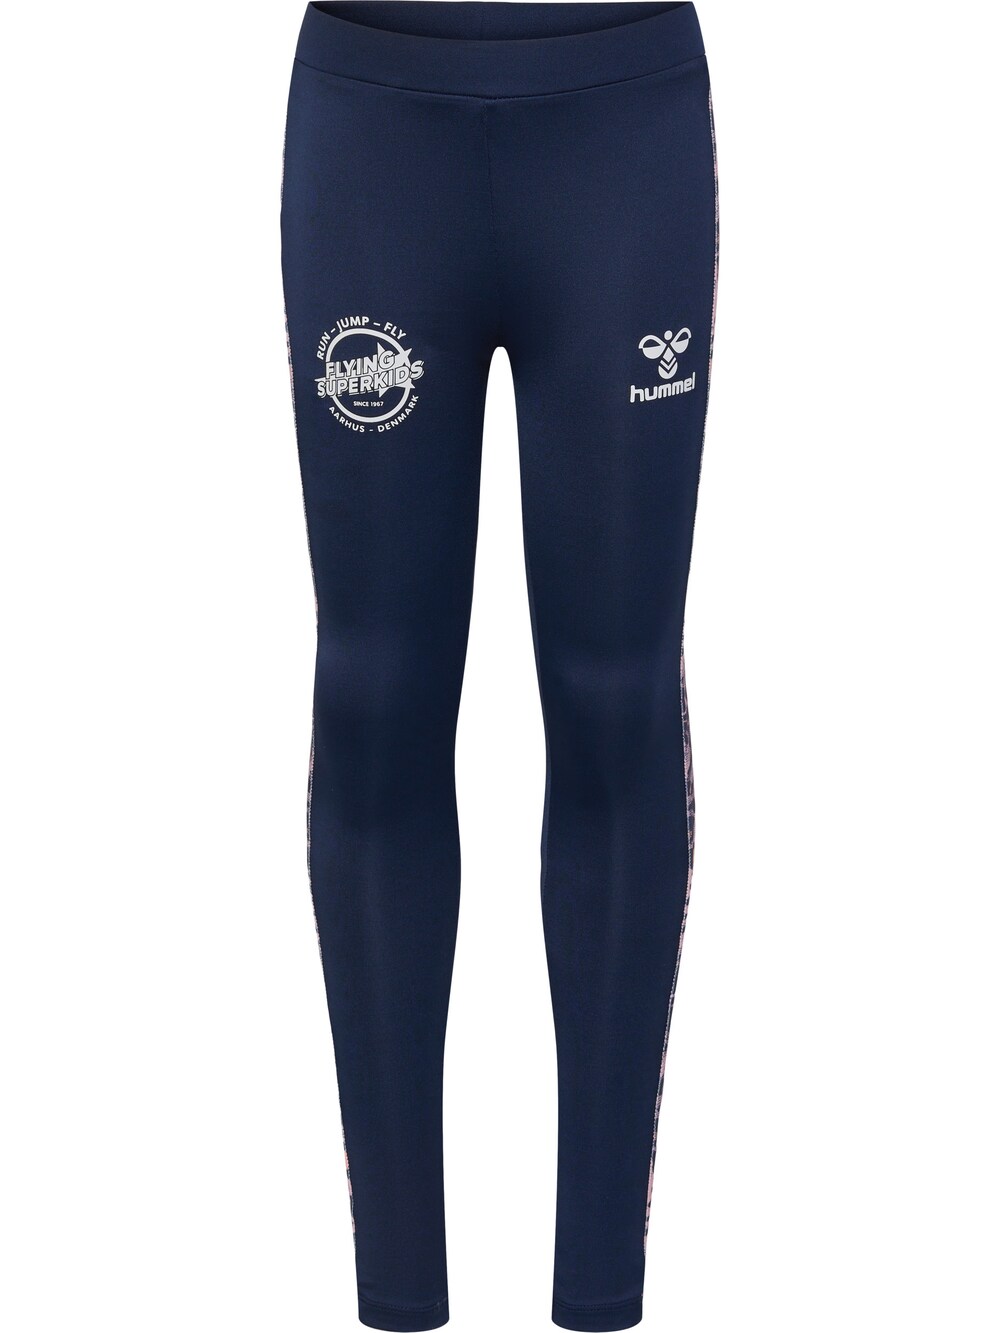 Узкие тренировочные брюки Hummel FSK JOY, темно-синий